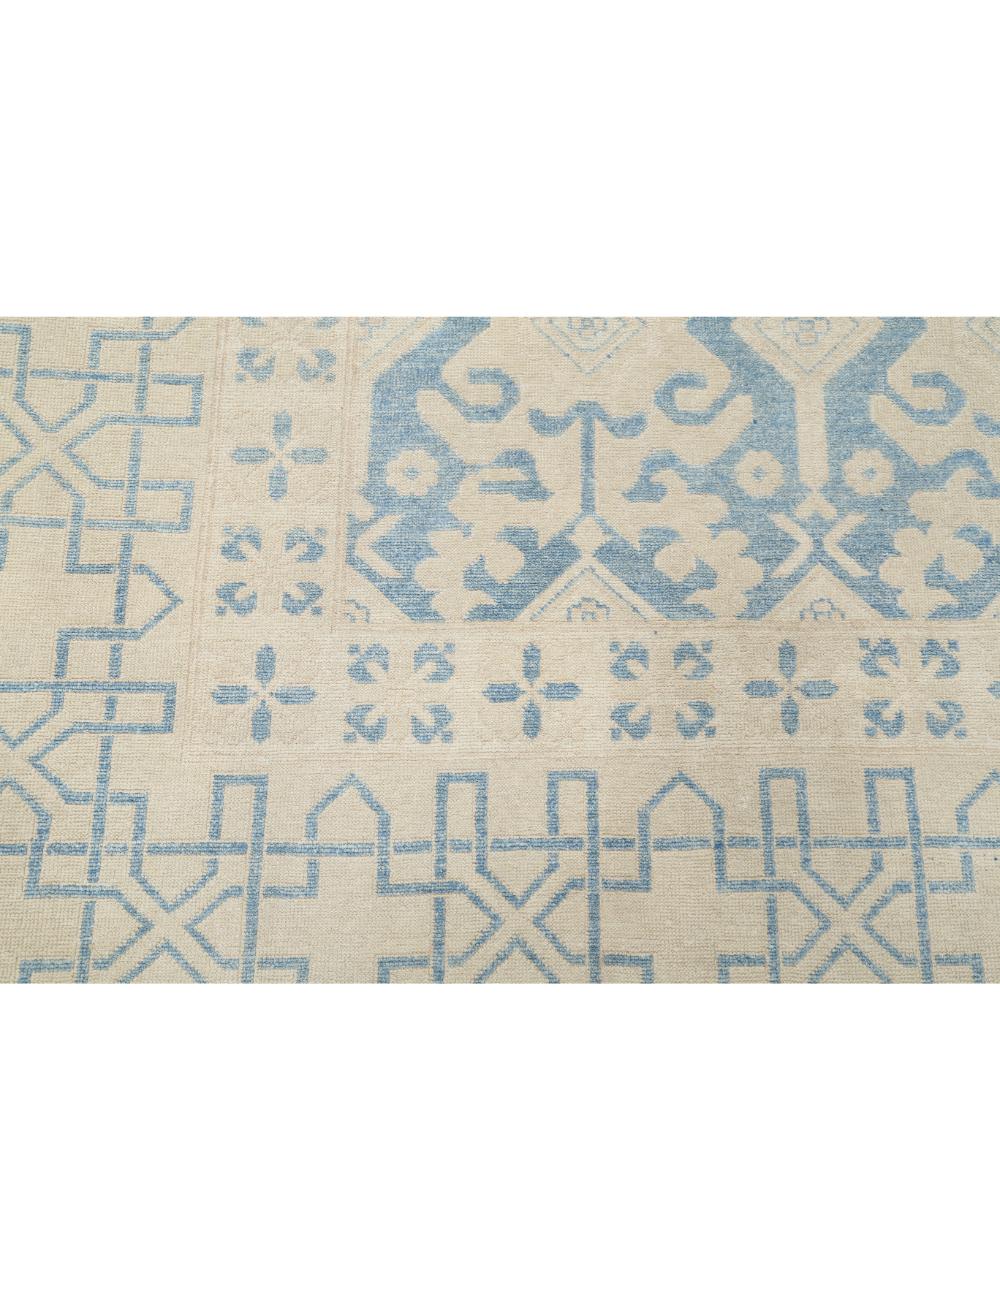 Hand Knotted Khotan Wool Rug - 9'10'' x 12'2'' Arteverk Arteverk Rugs